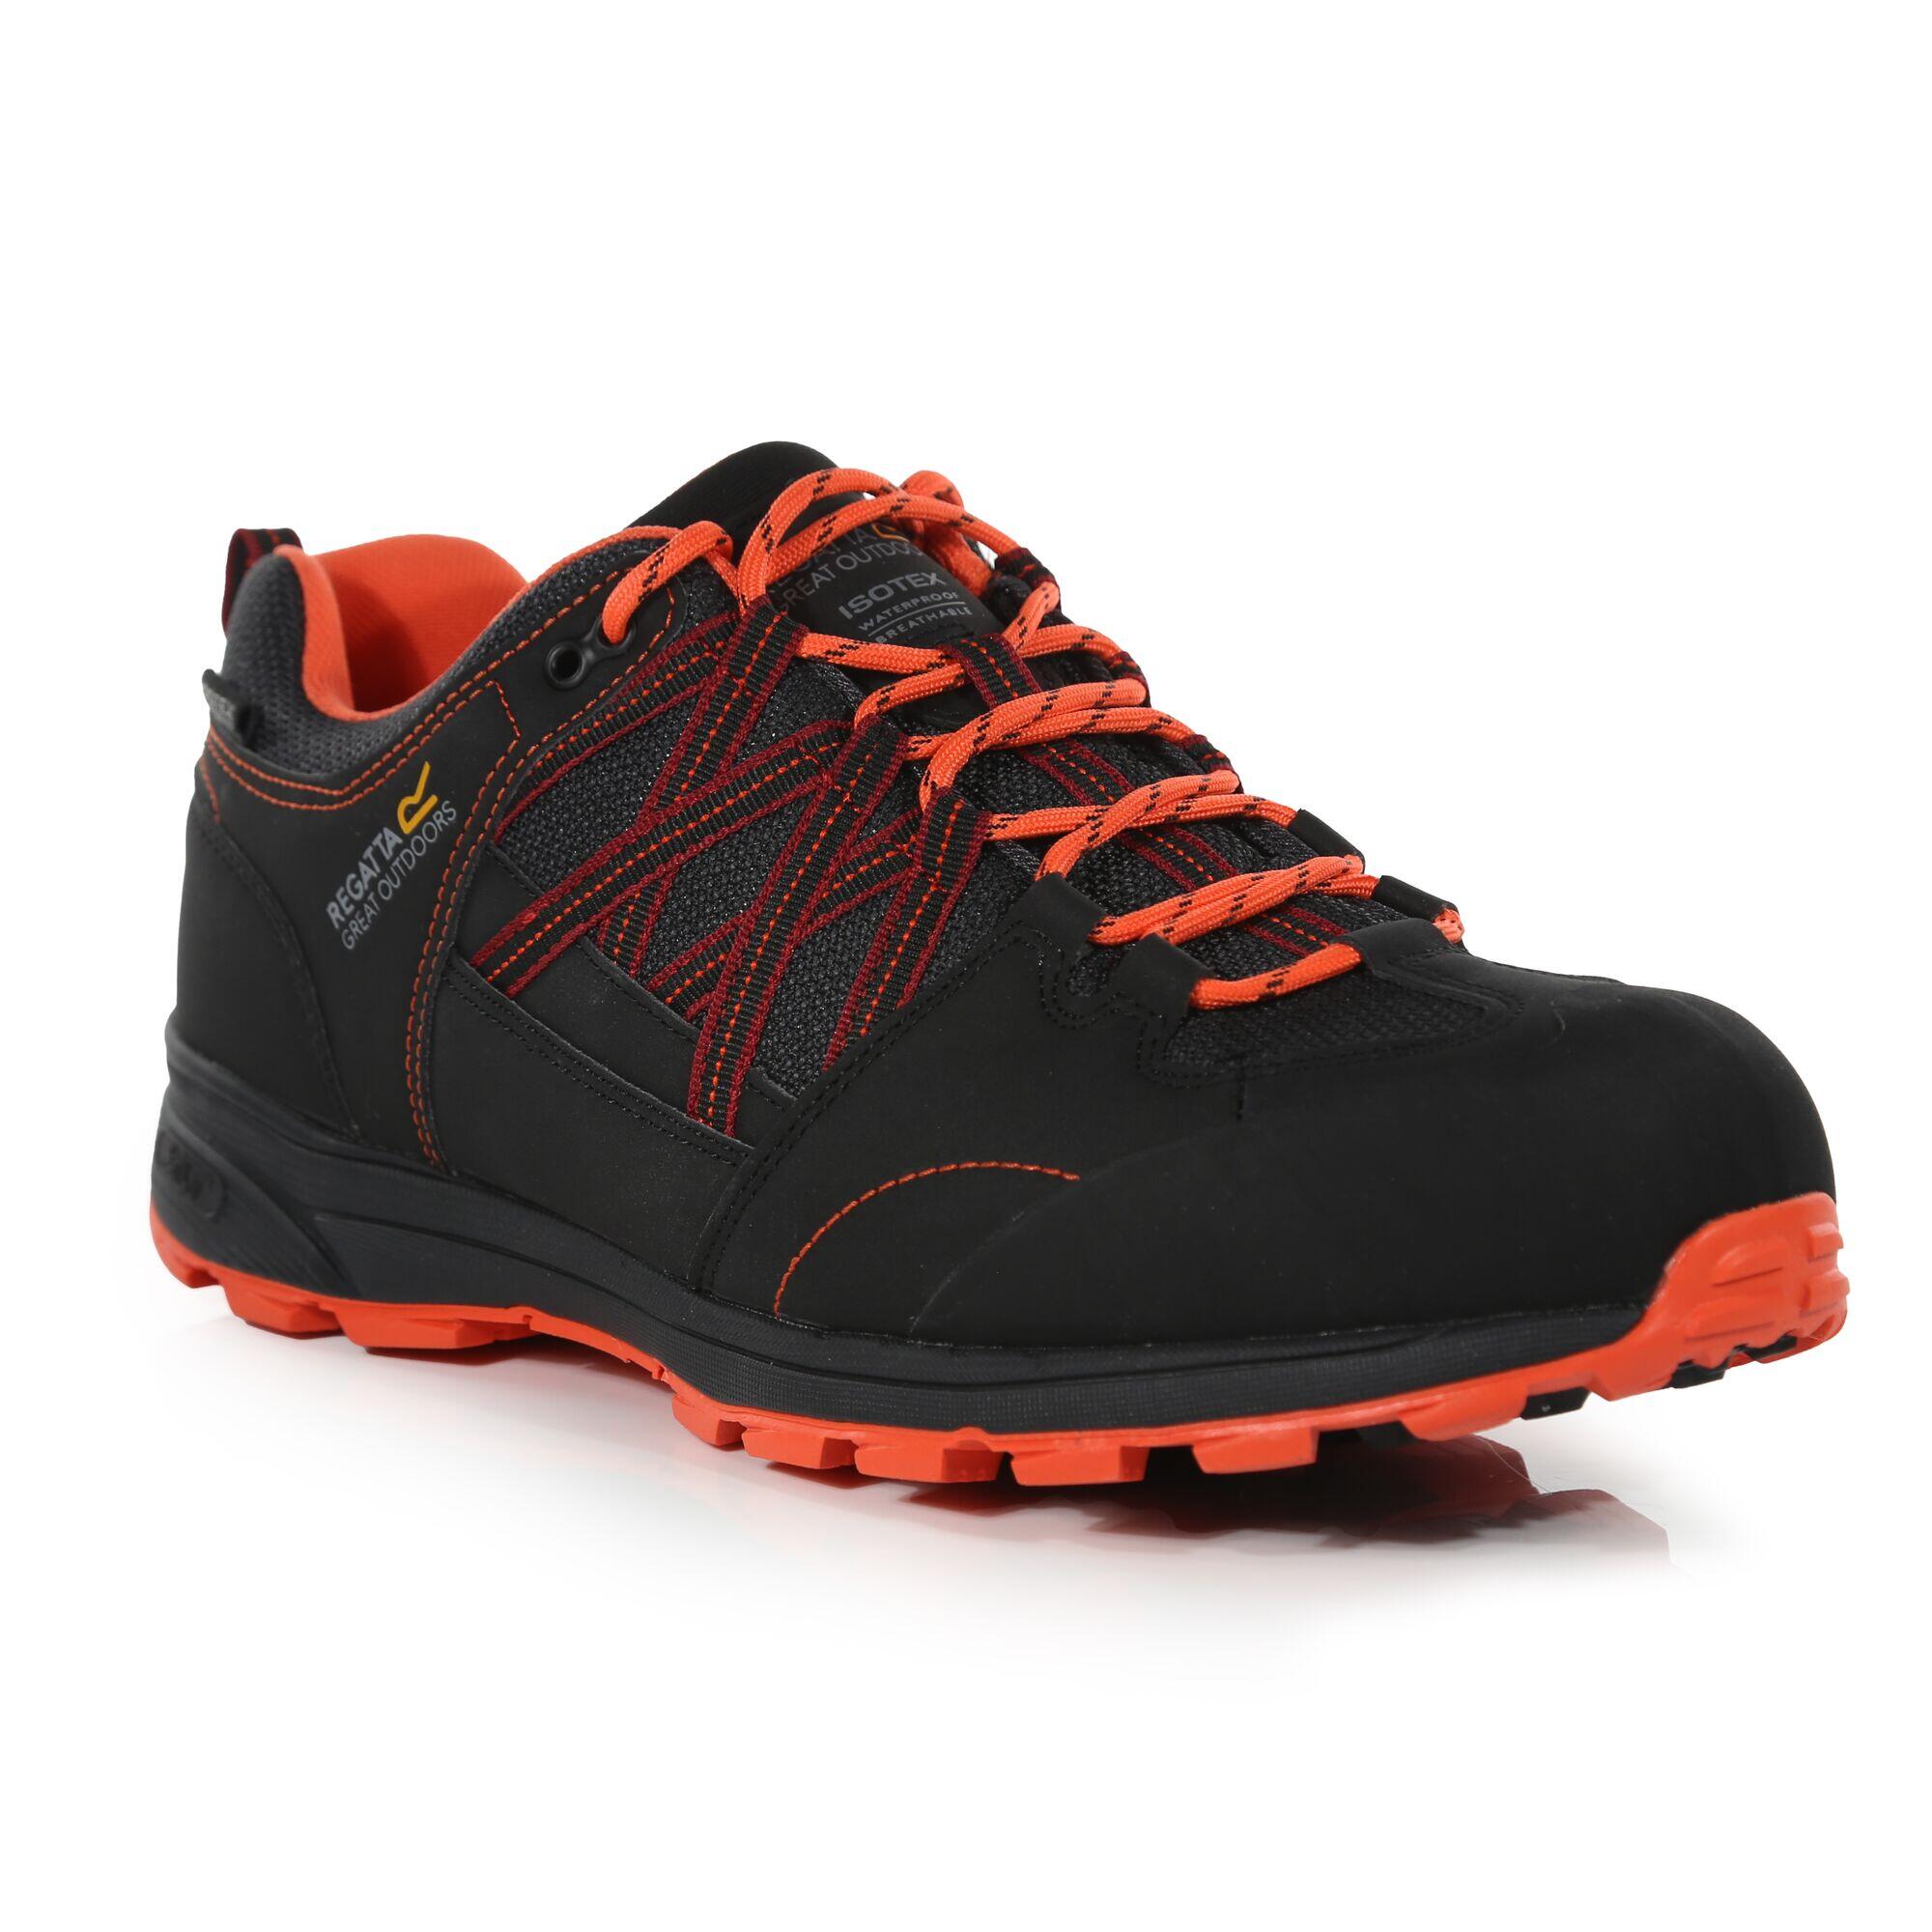 Samaris II Men's Hiking Shoes - Black/Red 2/6